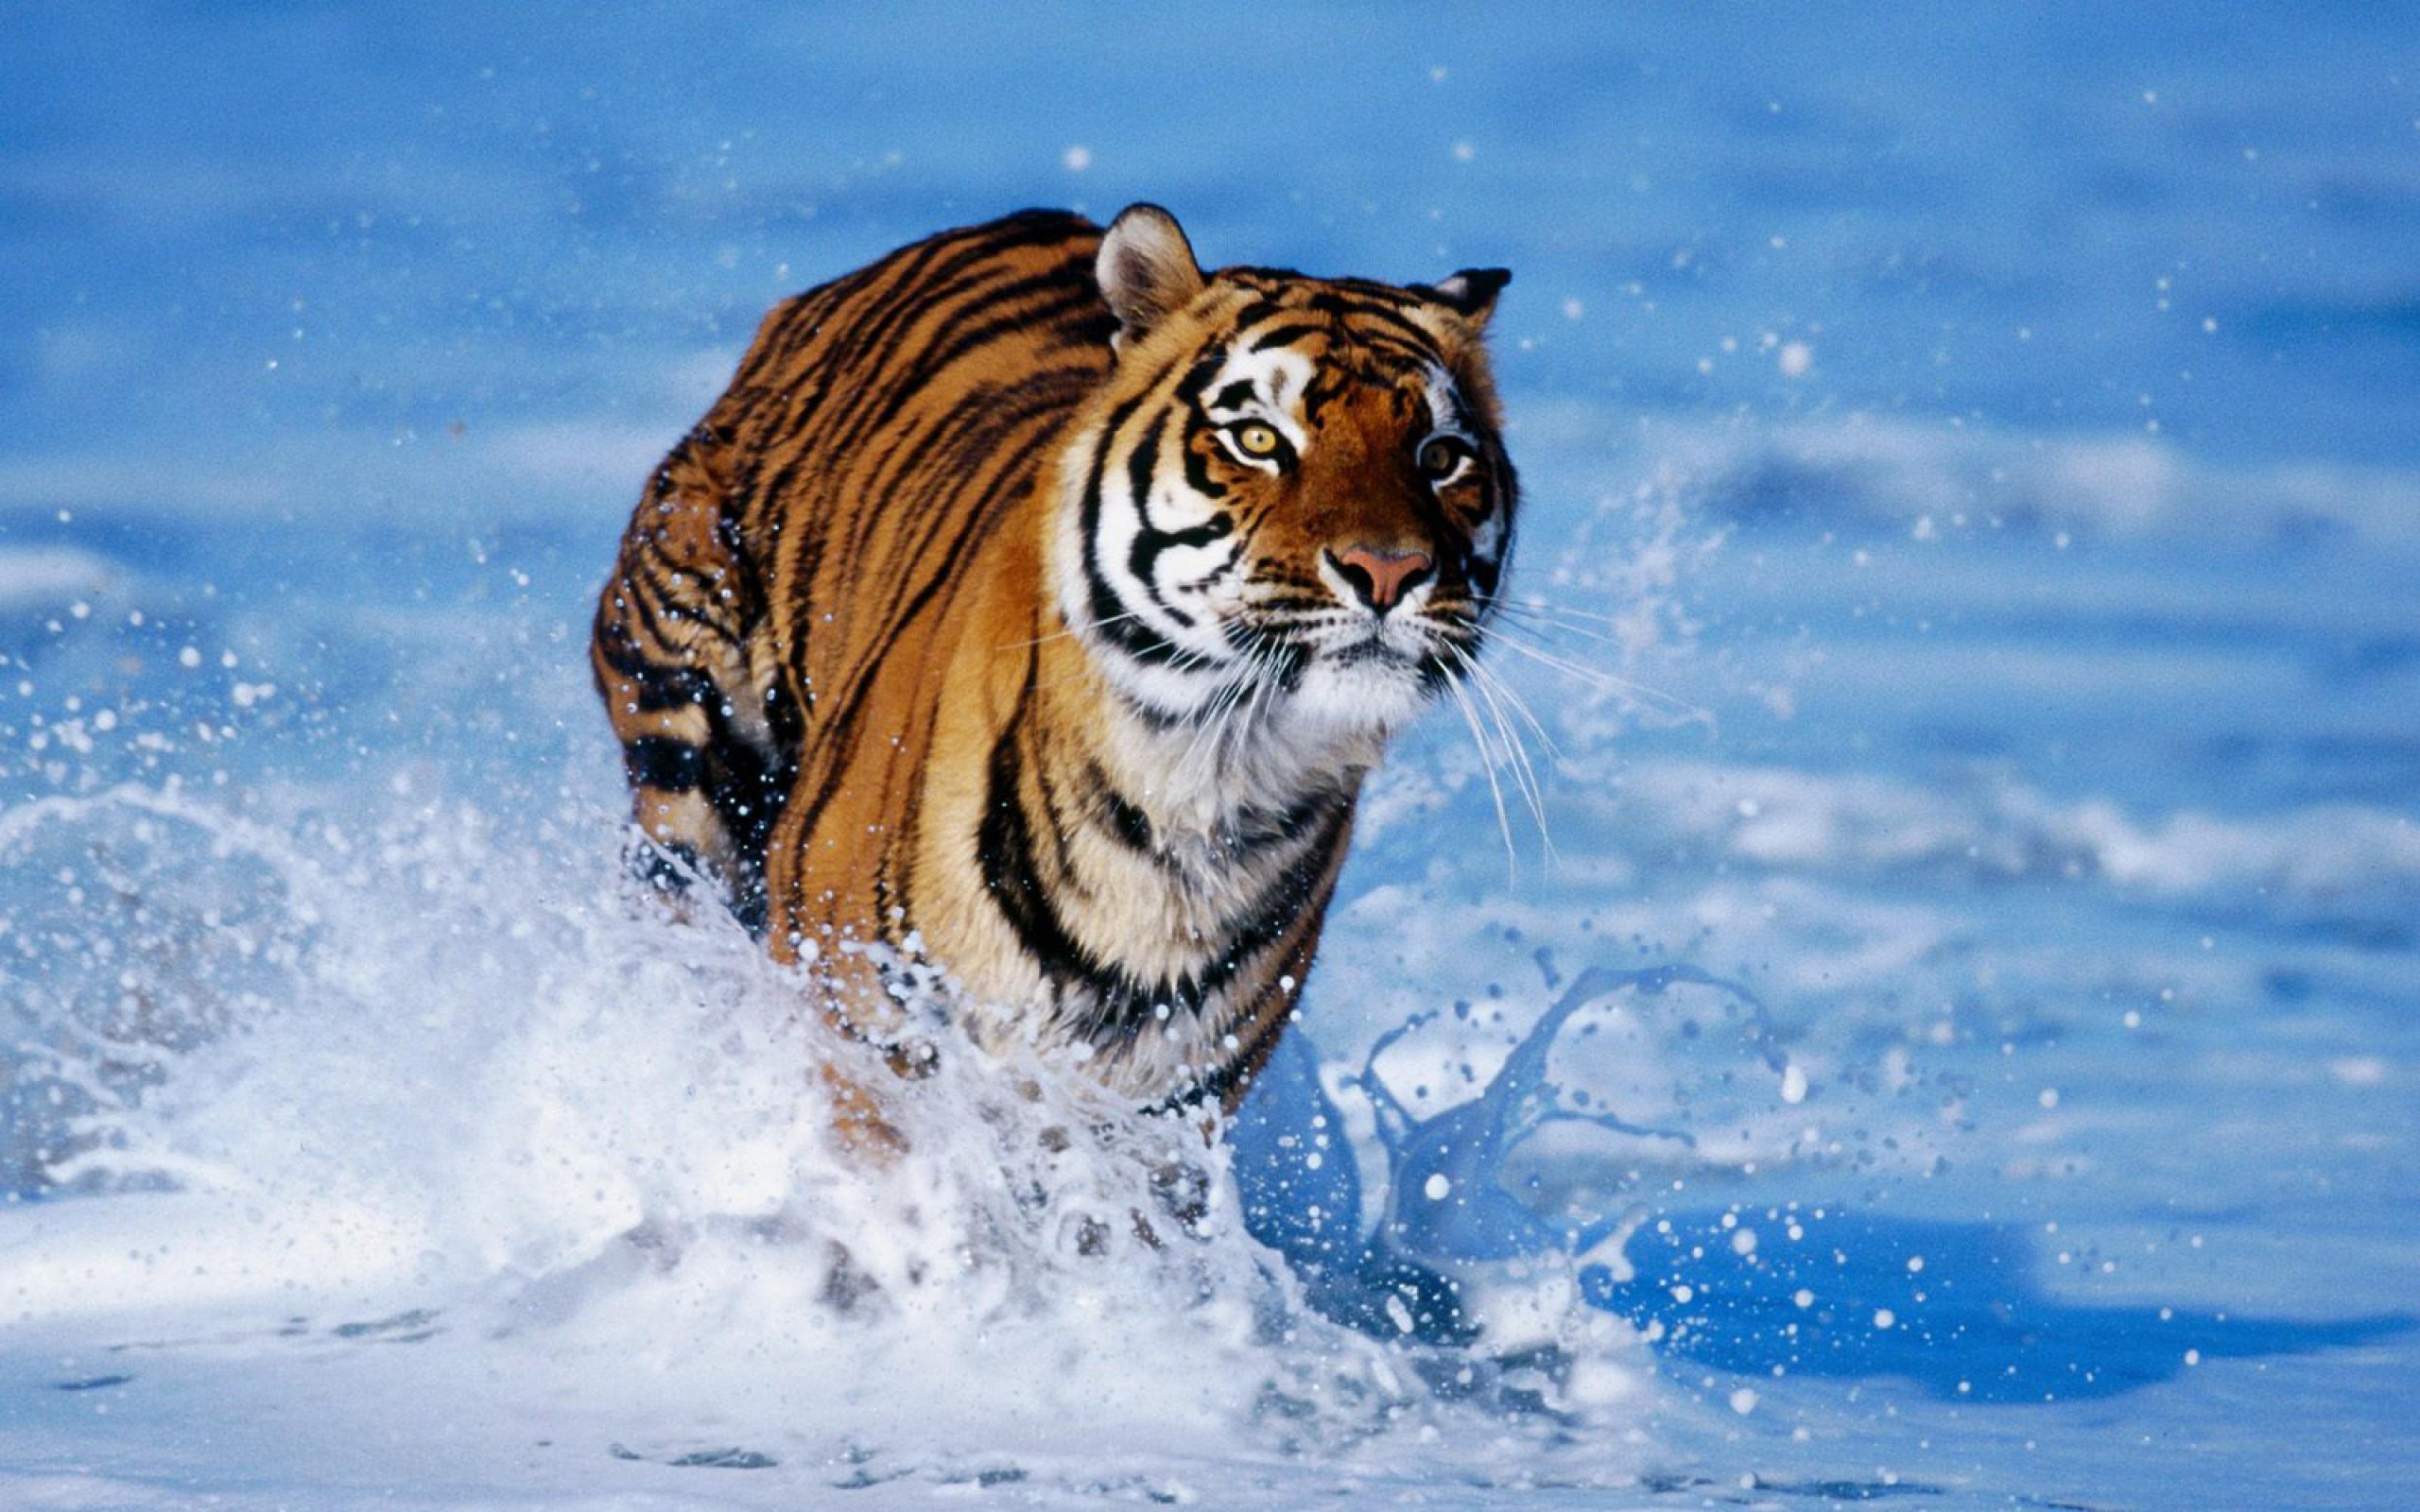 Tiiger jookseb läbi vee